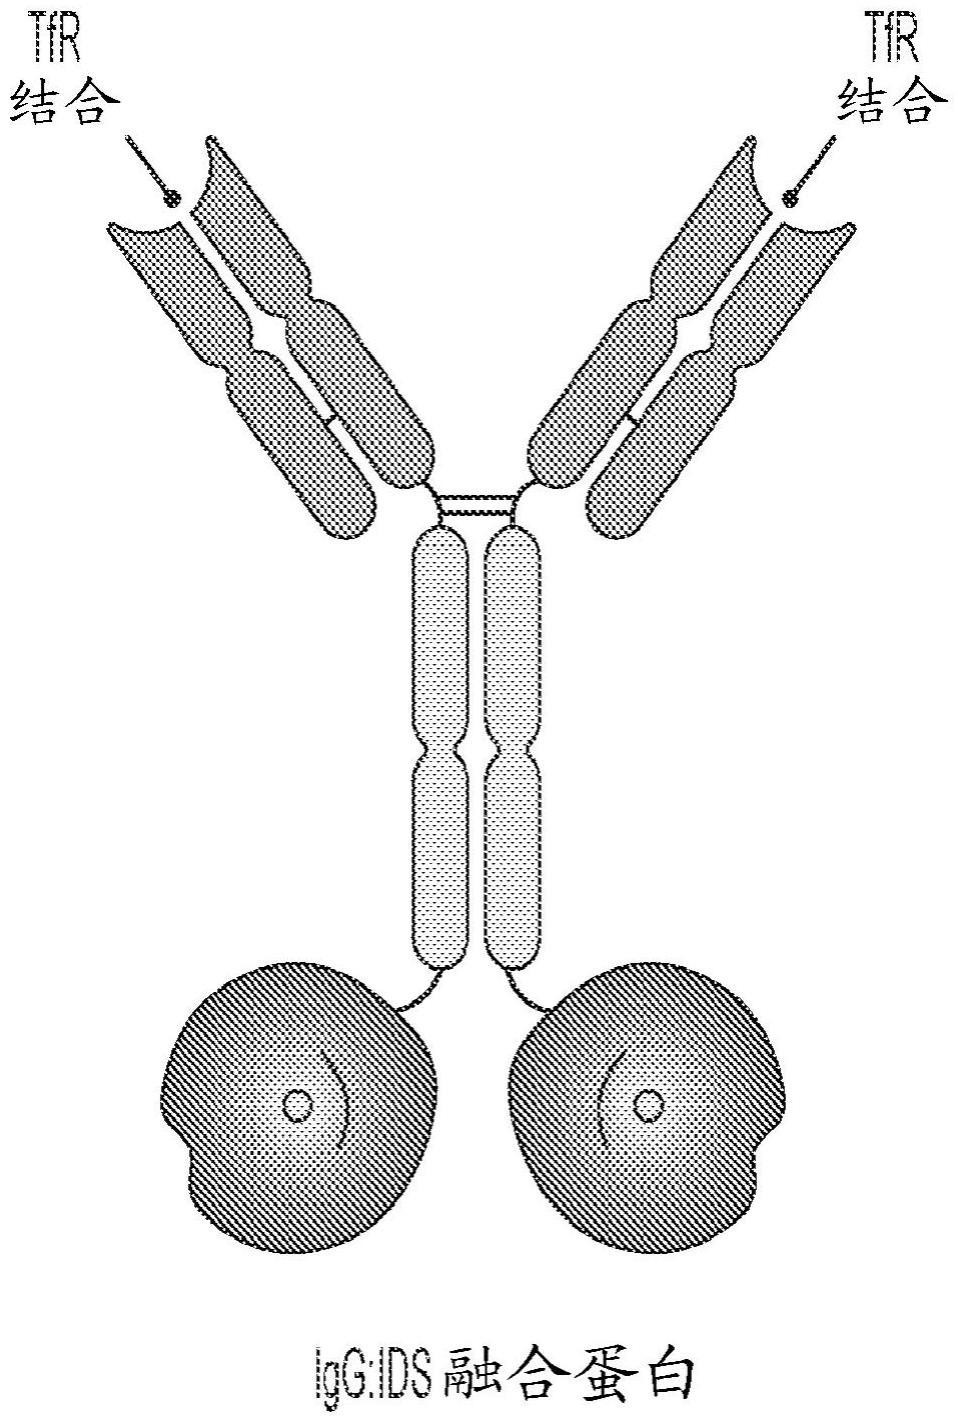 抗转铁蛋白受体融合蛋白及其使用方法与流程